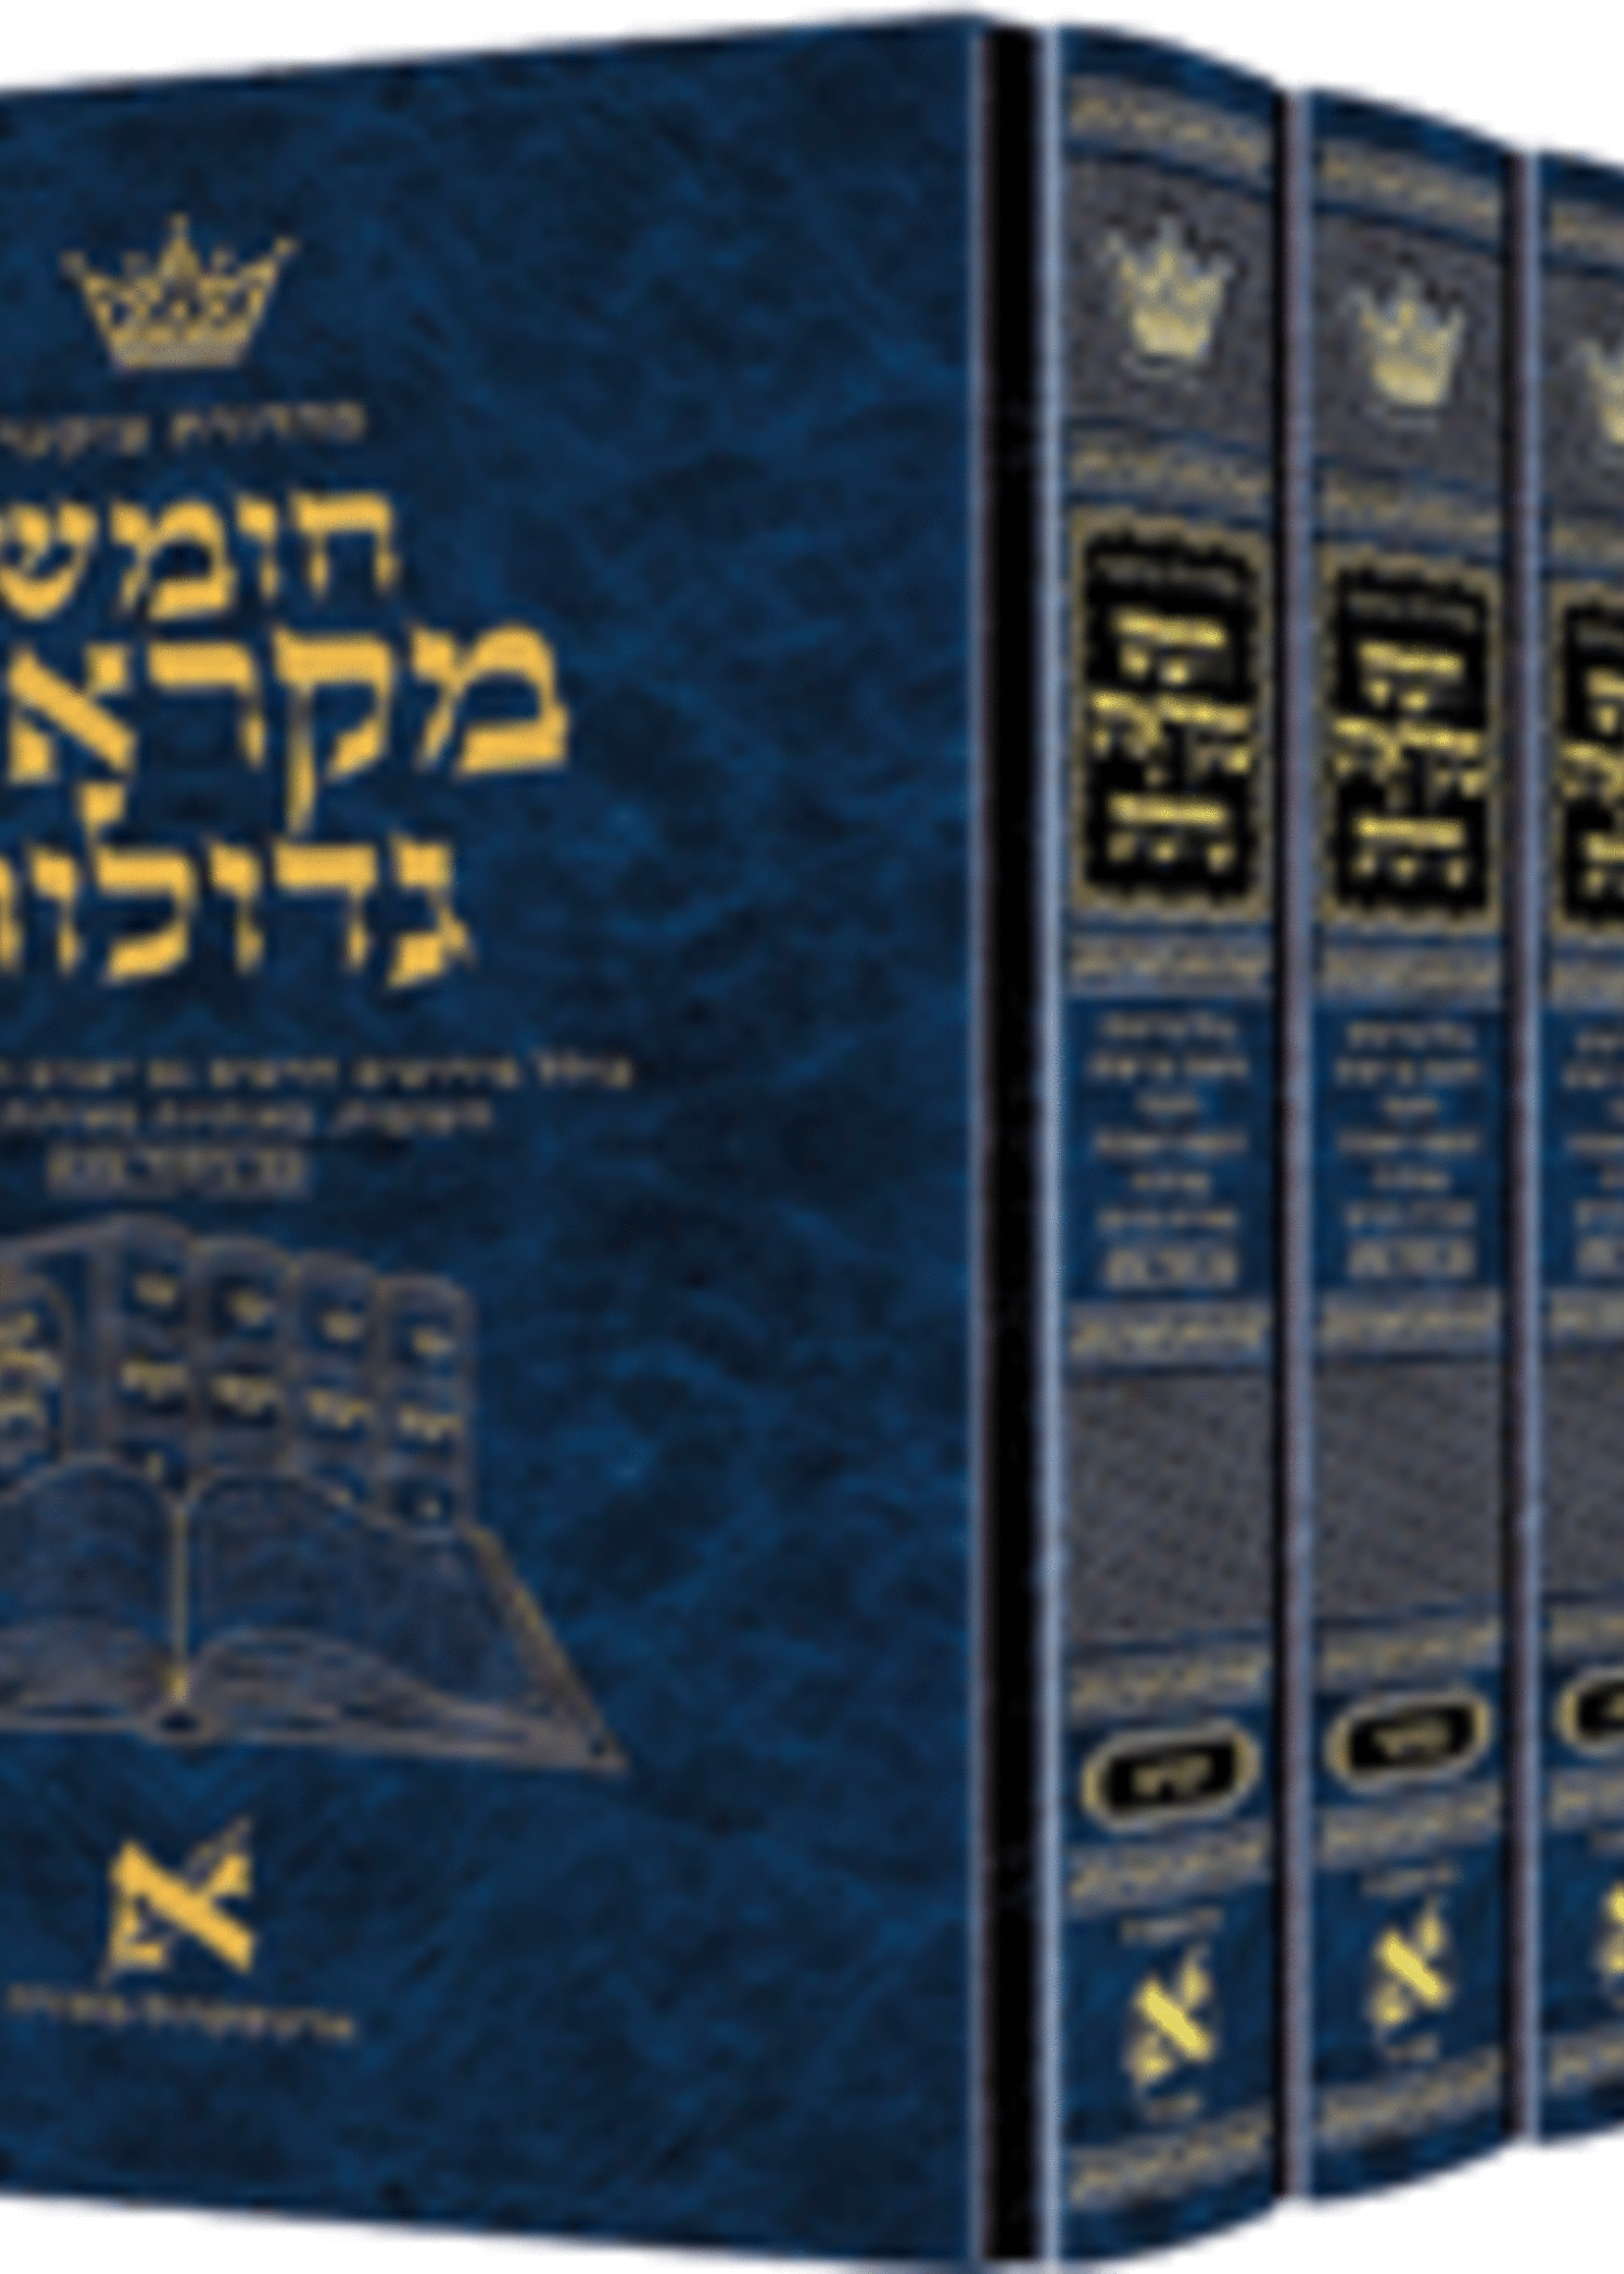 Czuker Edition Hebrew Chumash Mikra'os Gedolos Slipcased Set Full Size/  מקראות גדולות מהדורת צוקער חומש סט מלא גדול ה כרכים